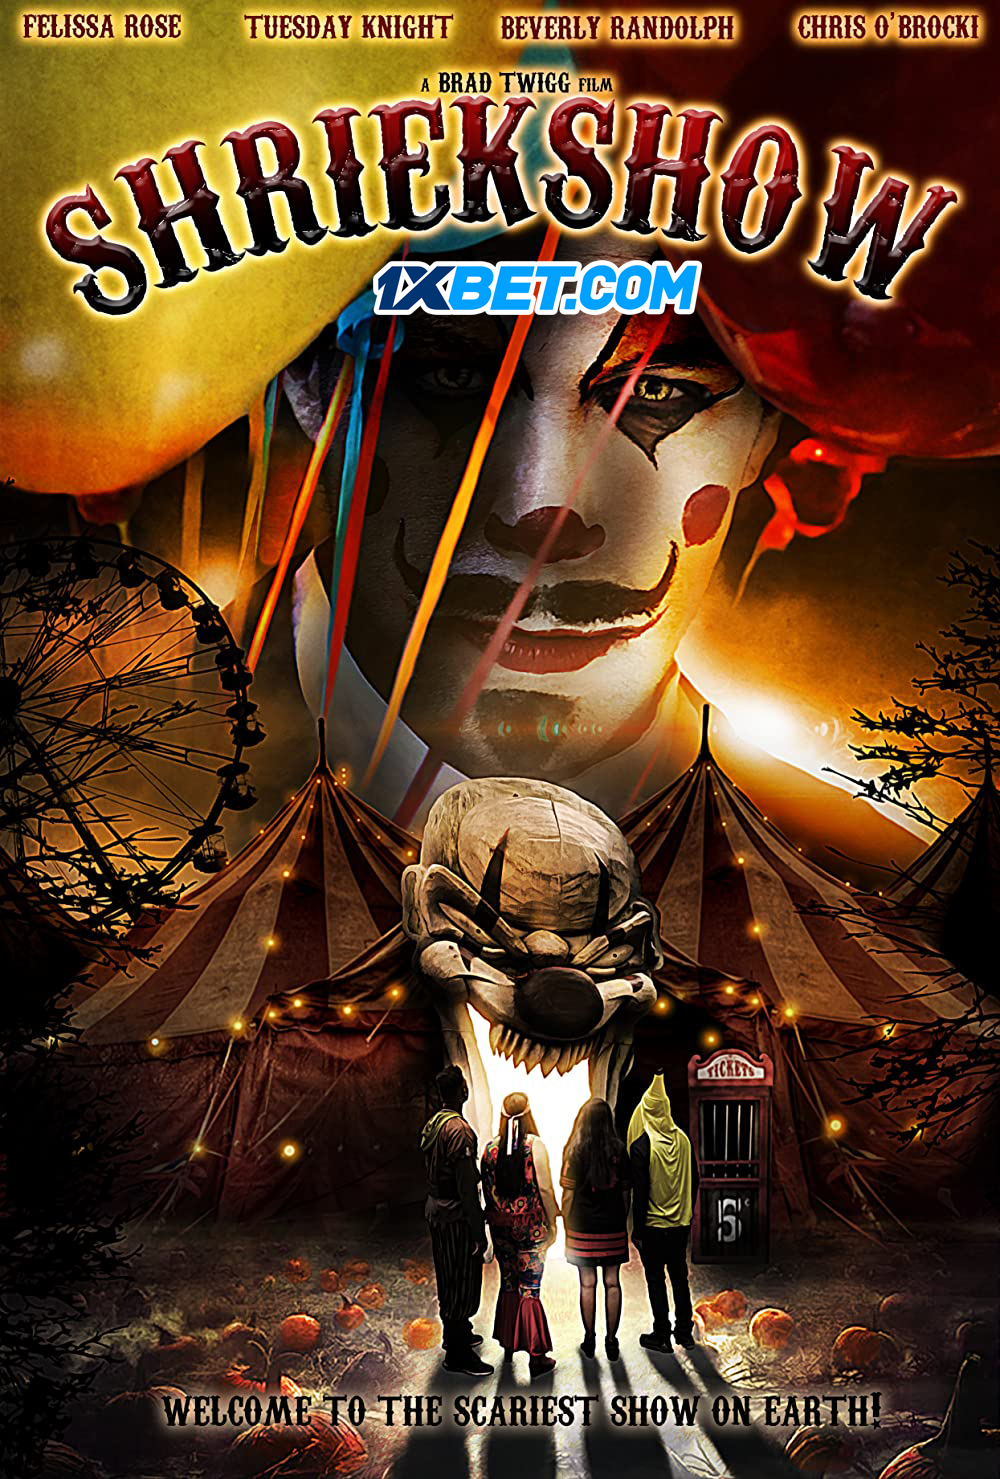 Shriekshow (2022) Bengali Dubbed (VO) [1XBET] 720p WEBRip Online Stream